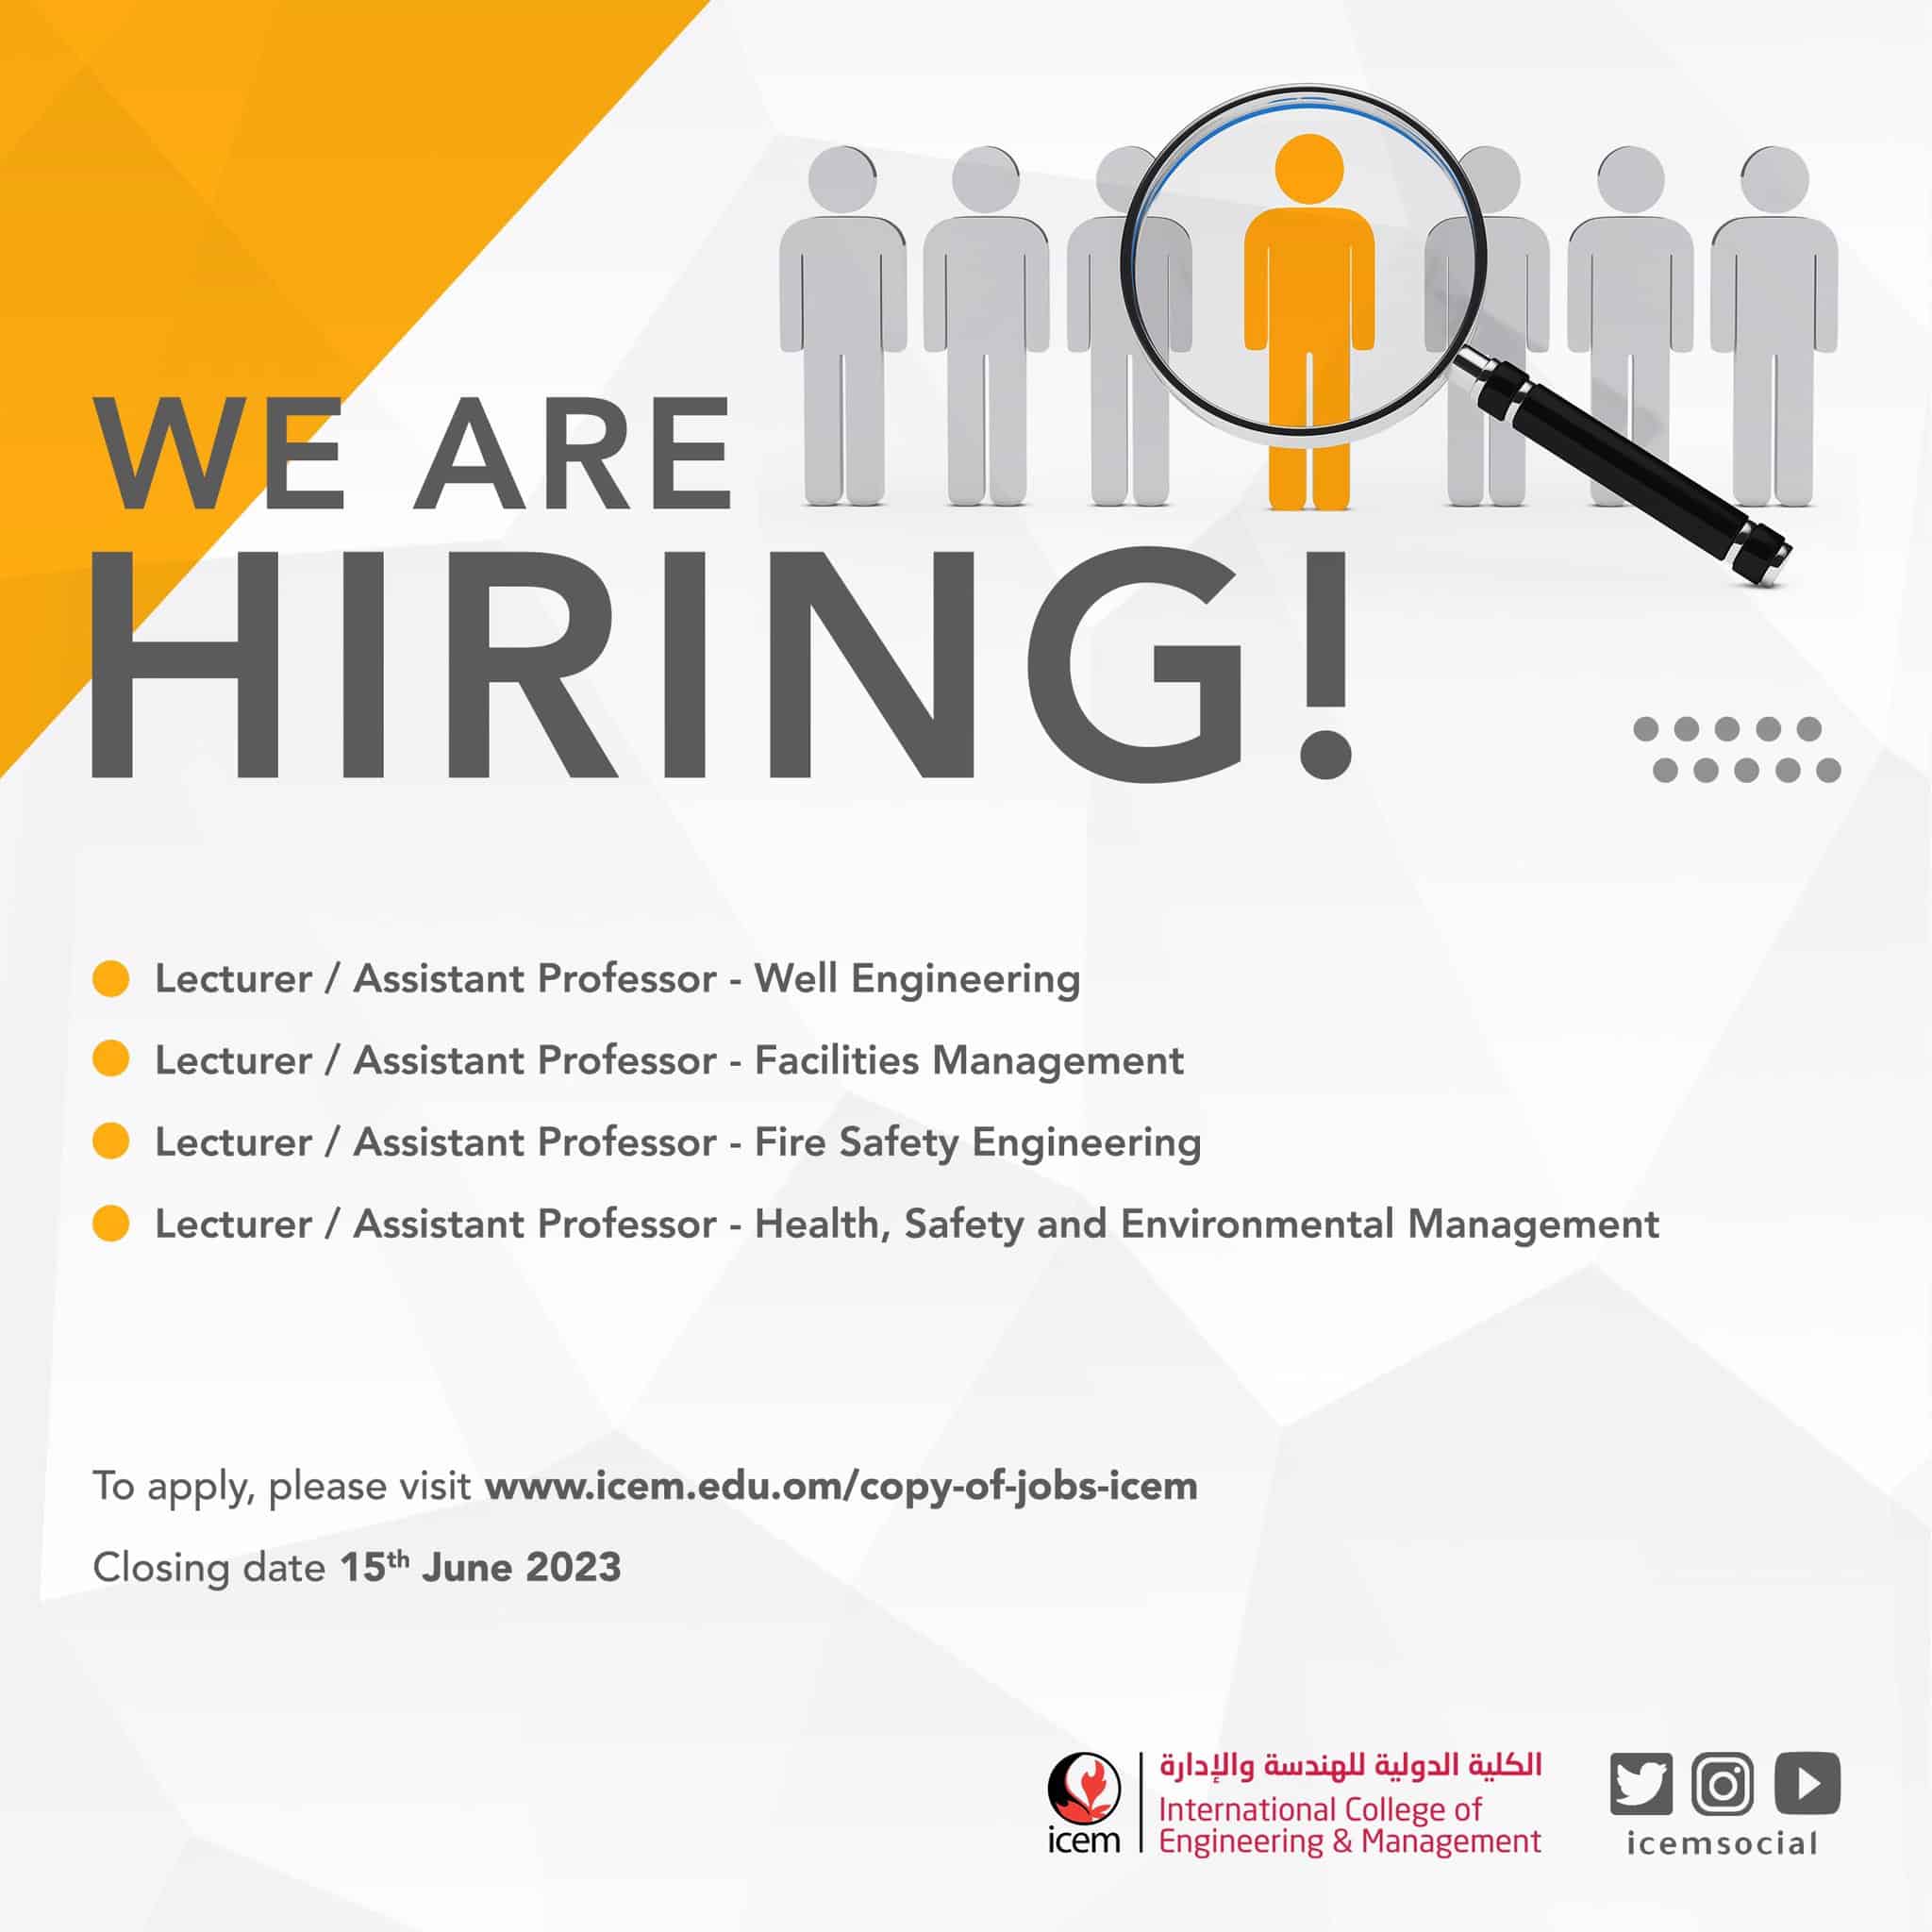 وظائف الكلية الدولية للهندسة والادارة 2023 في مسقط بسلطنة عمان لجميع الجنسيات